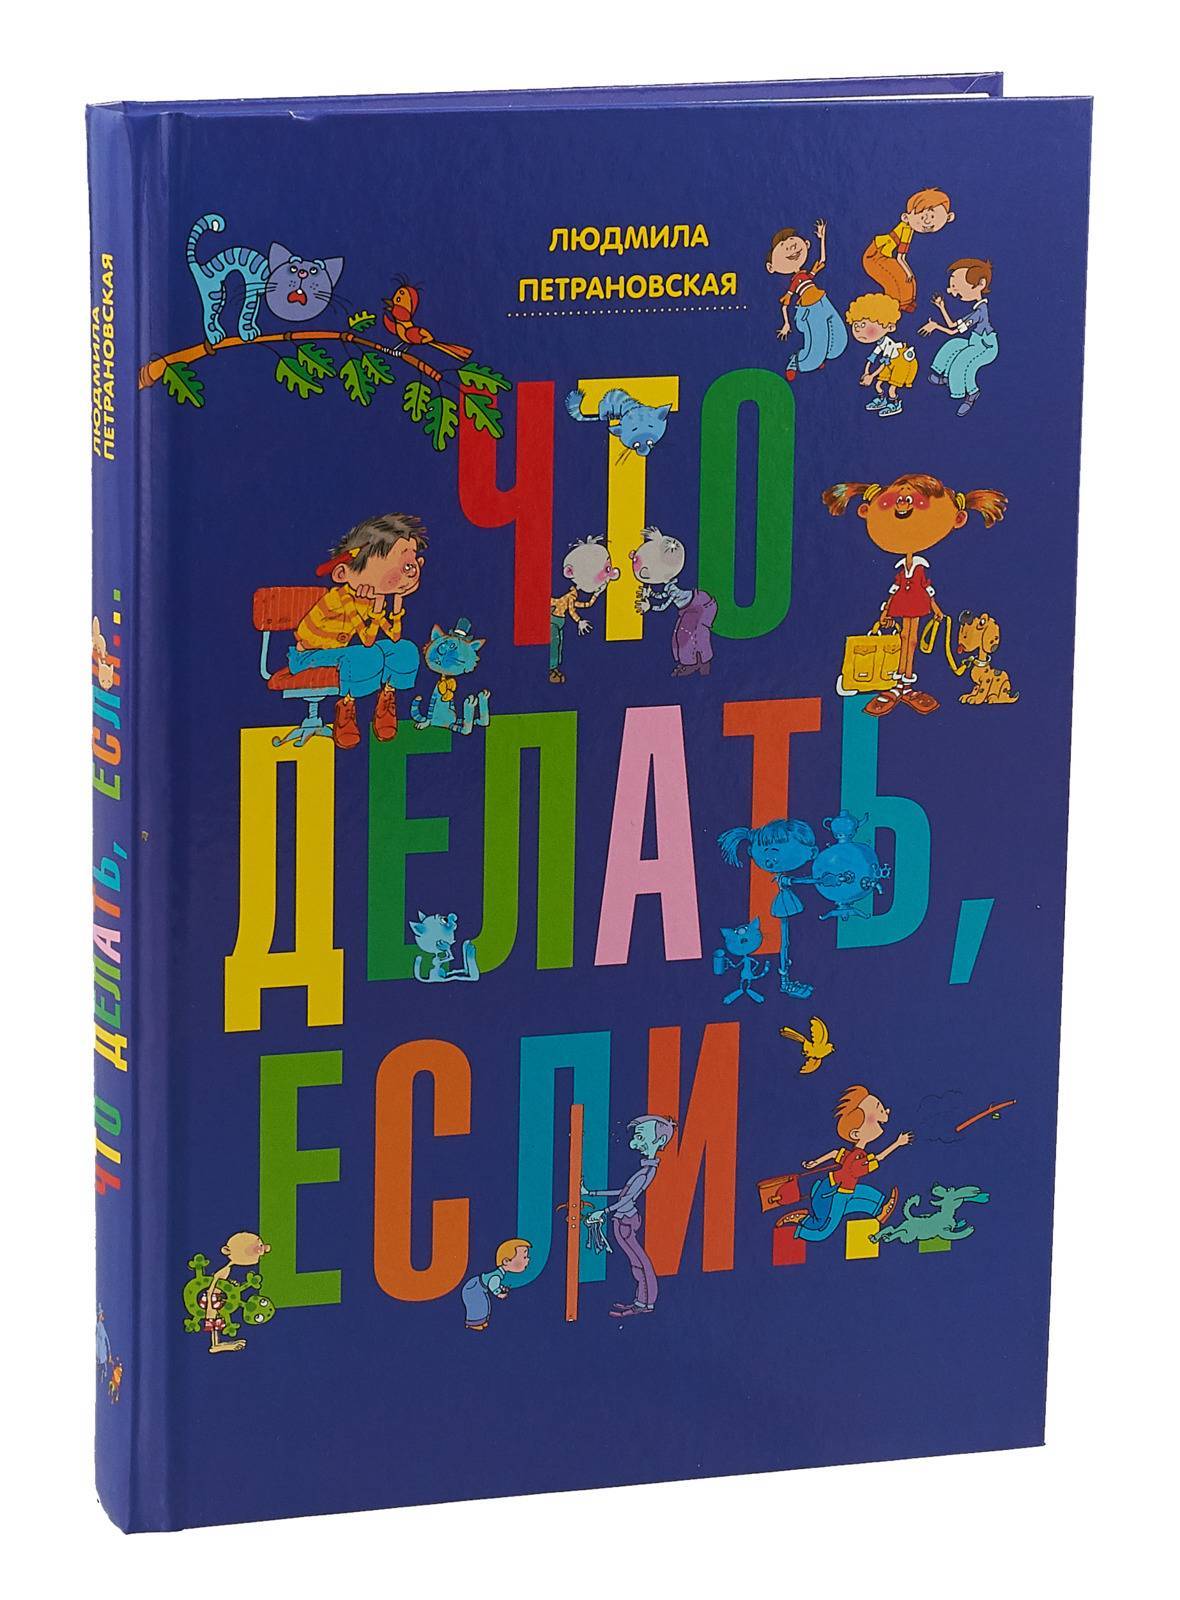 Всё-всё-всё о воспитании детей читать онлайн людмила петрановская  | knizhnik.org